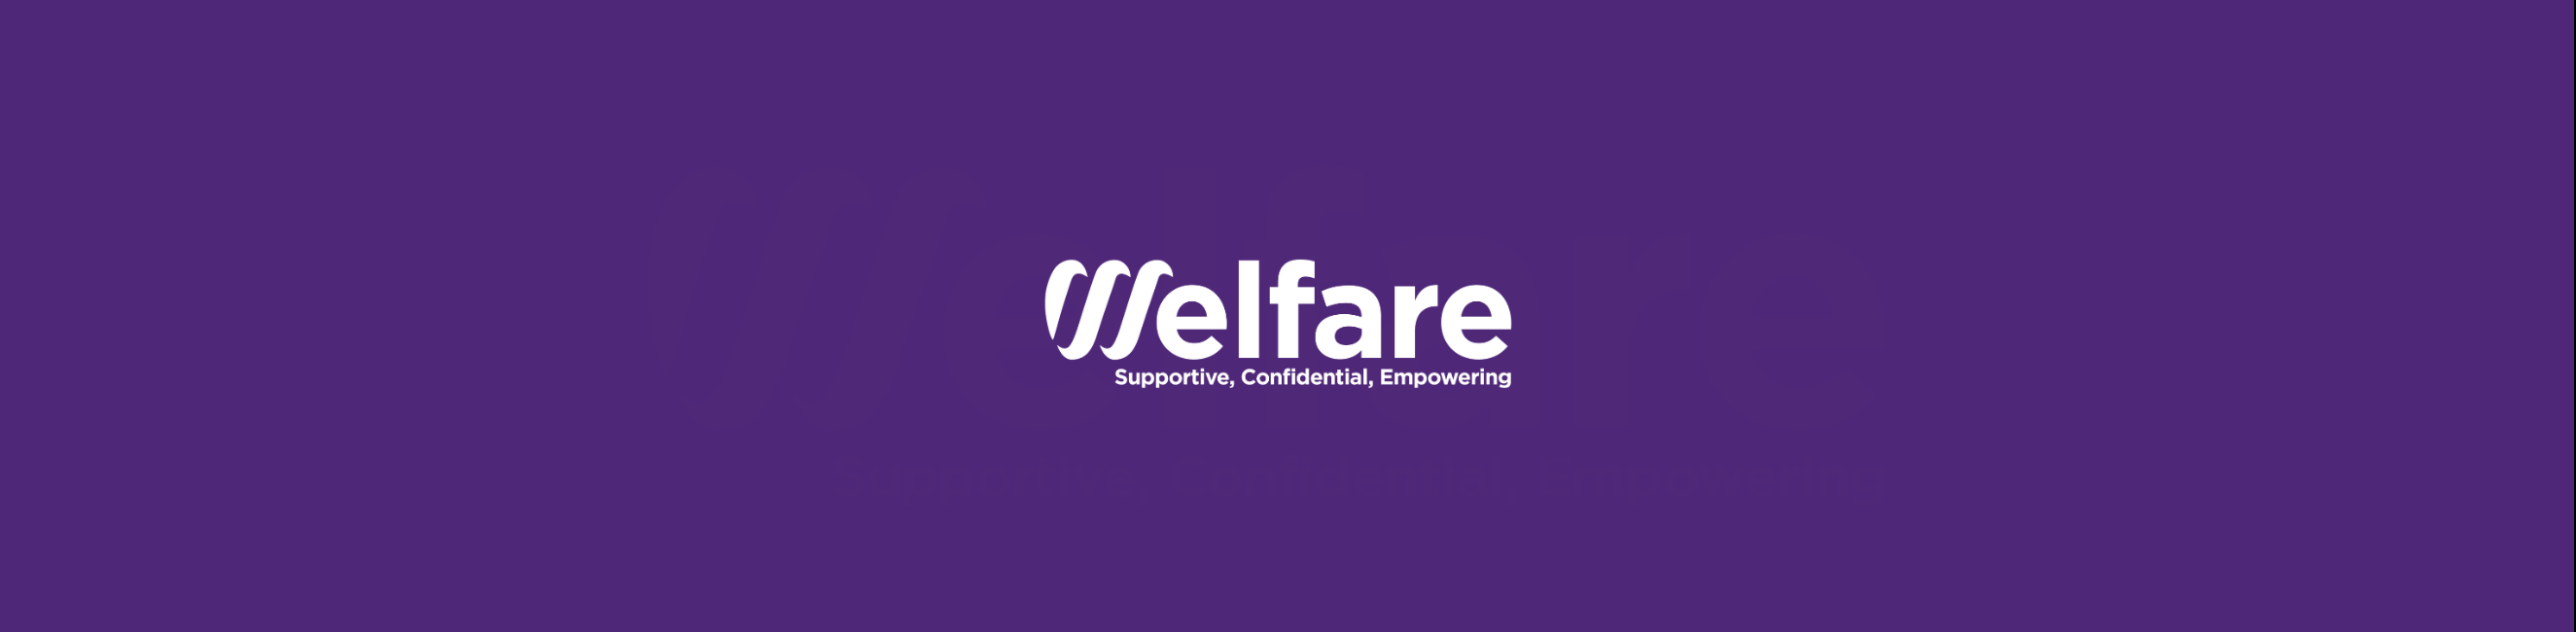 weston college welfare banner